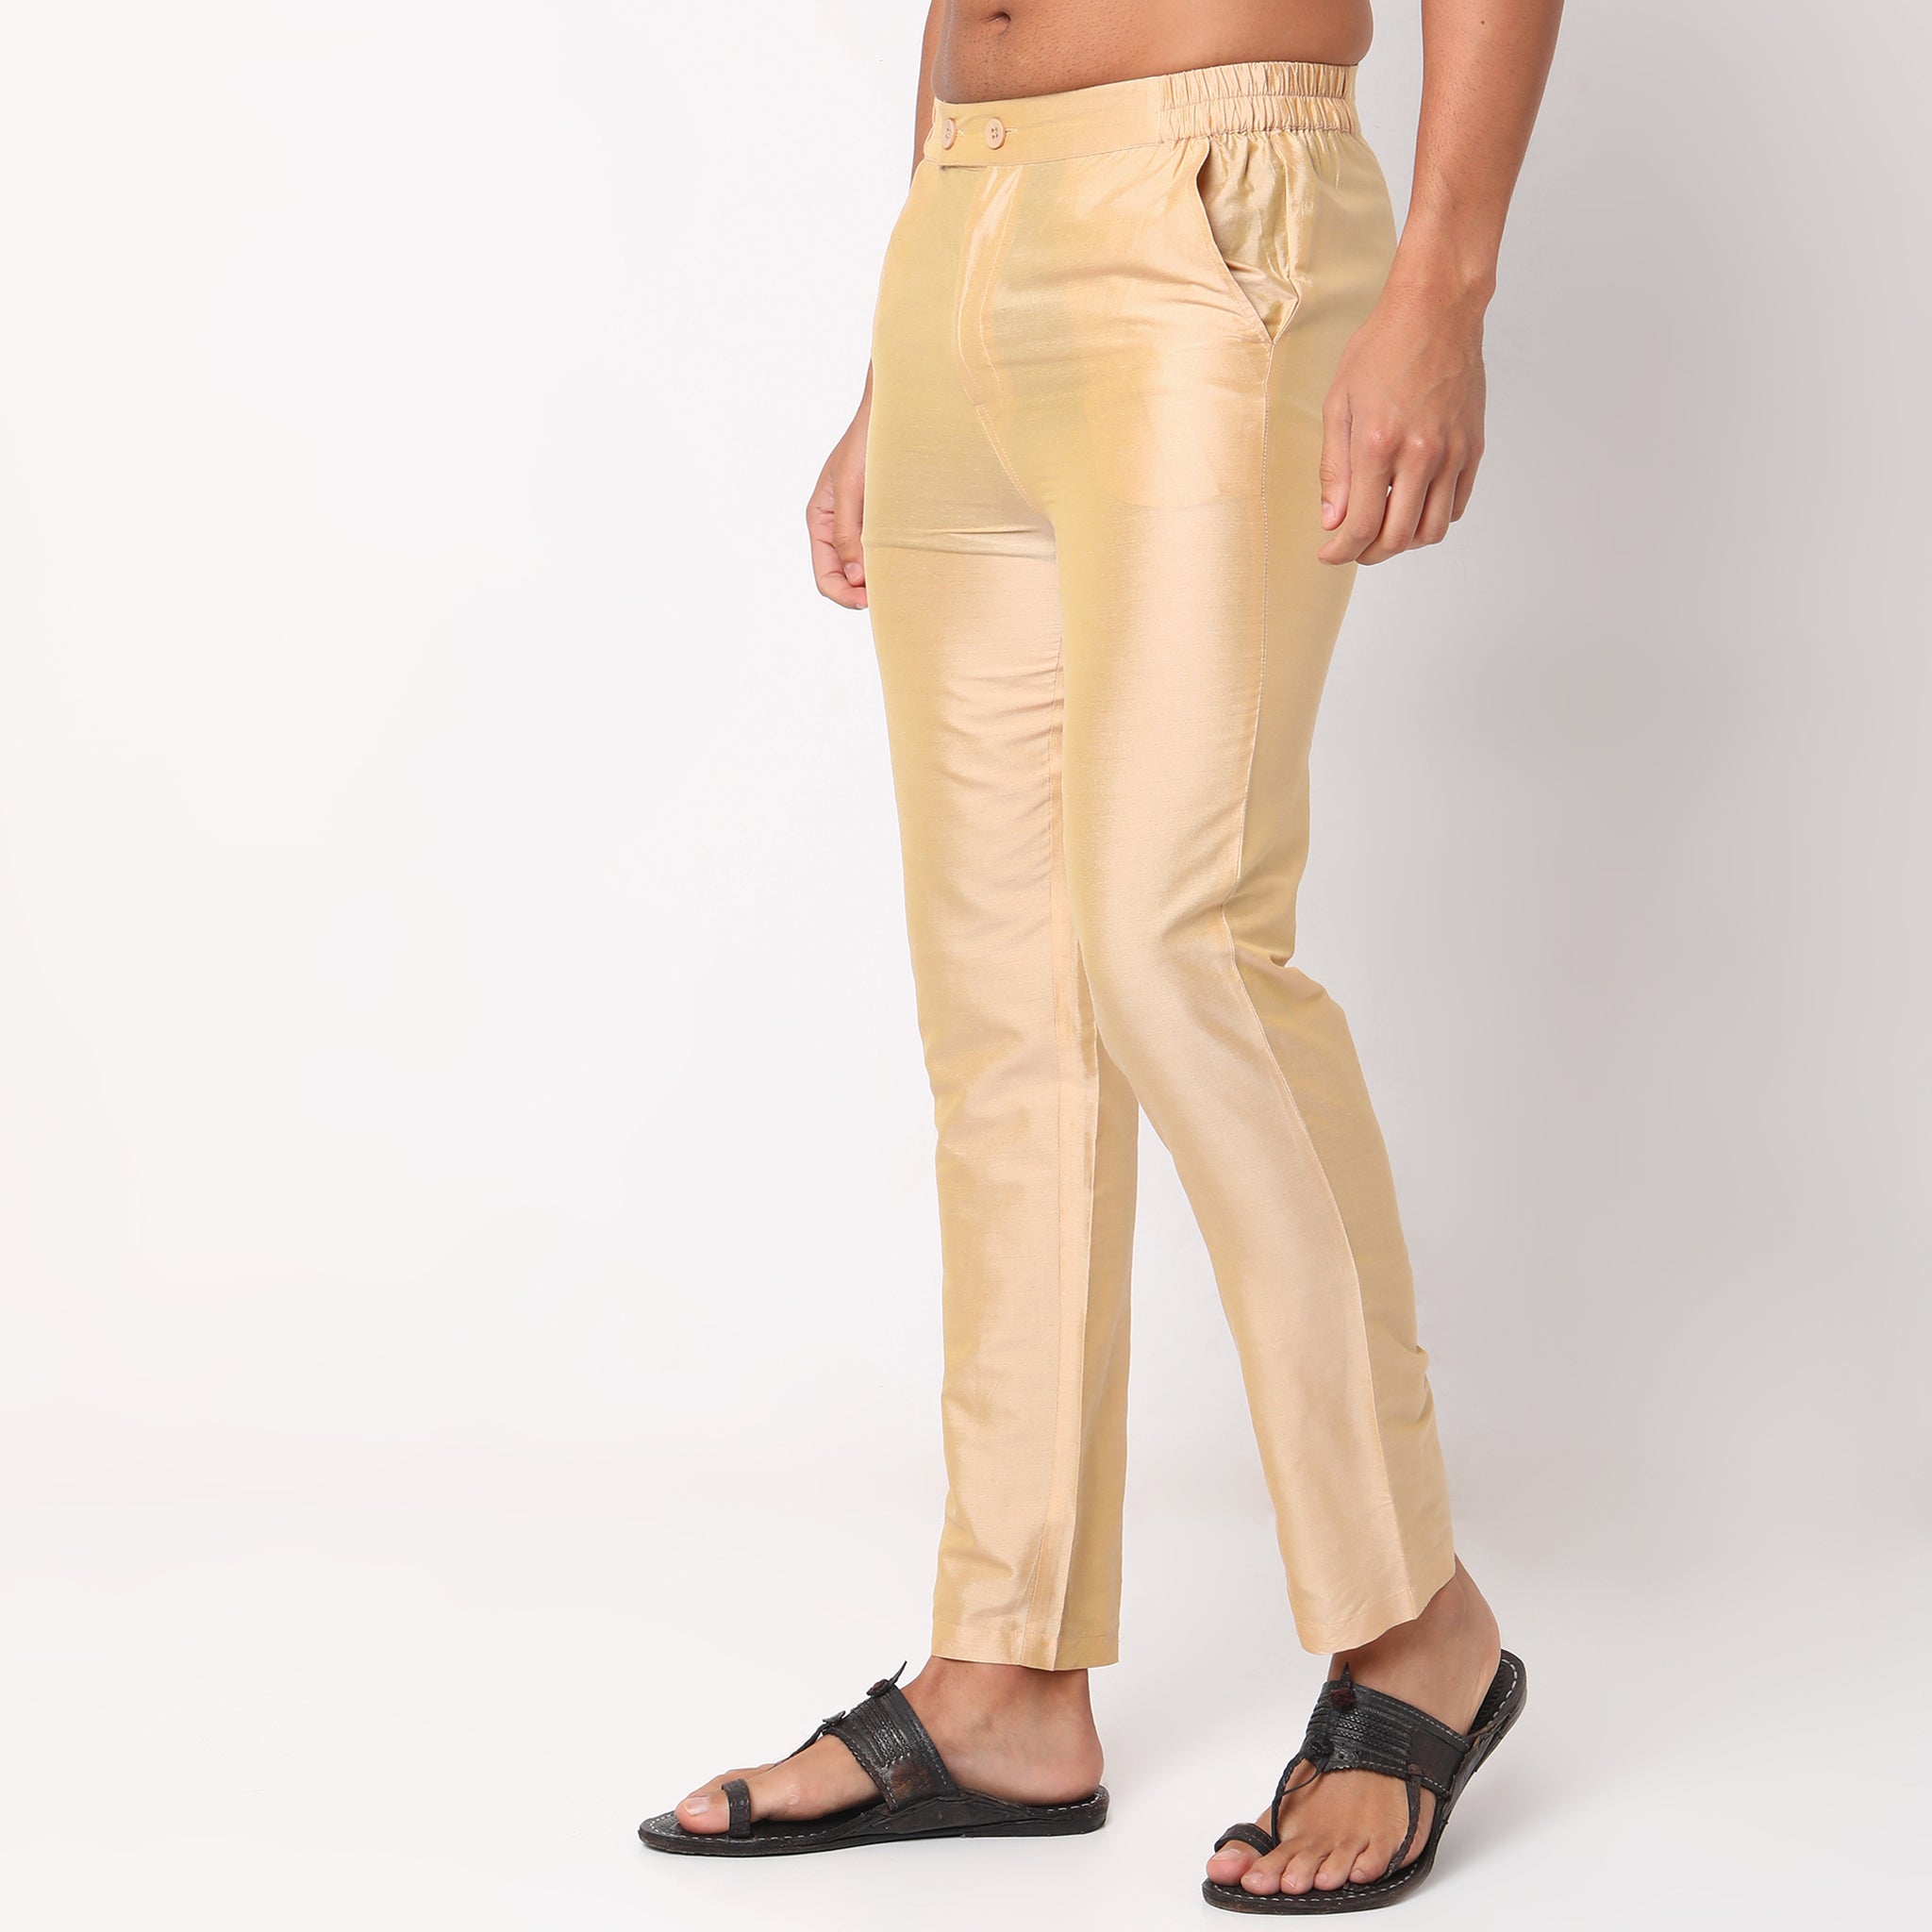 Buy Light Cream Ethnic Pants Online @Manyavar - Lower for Men